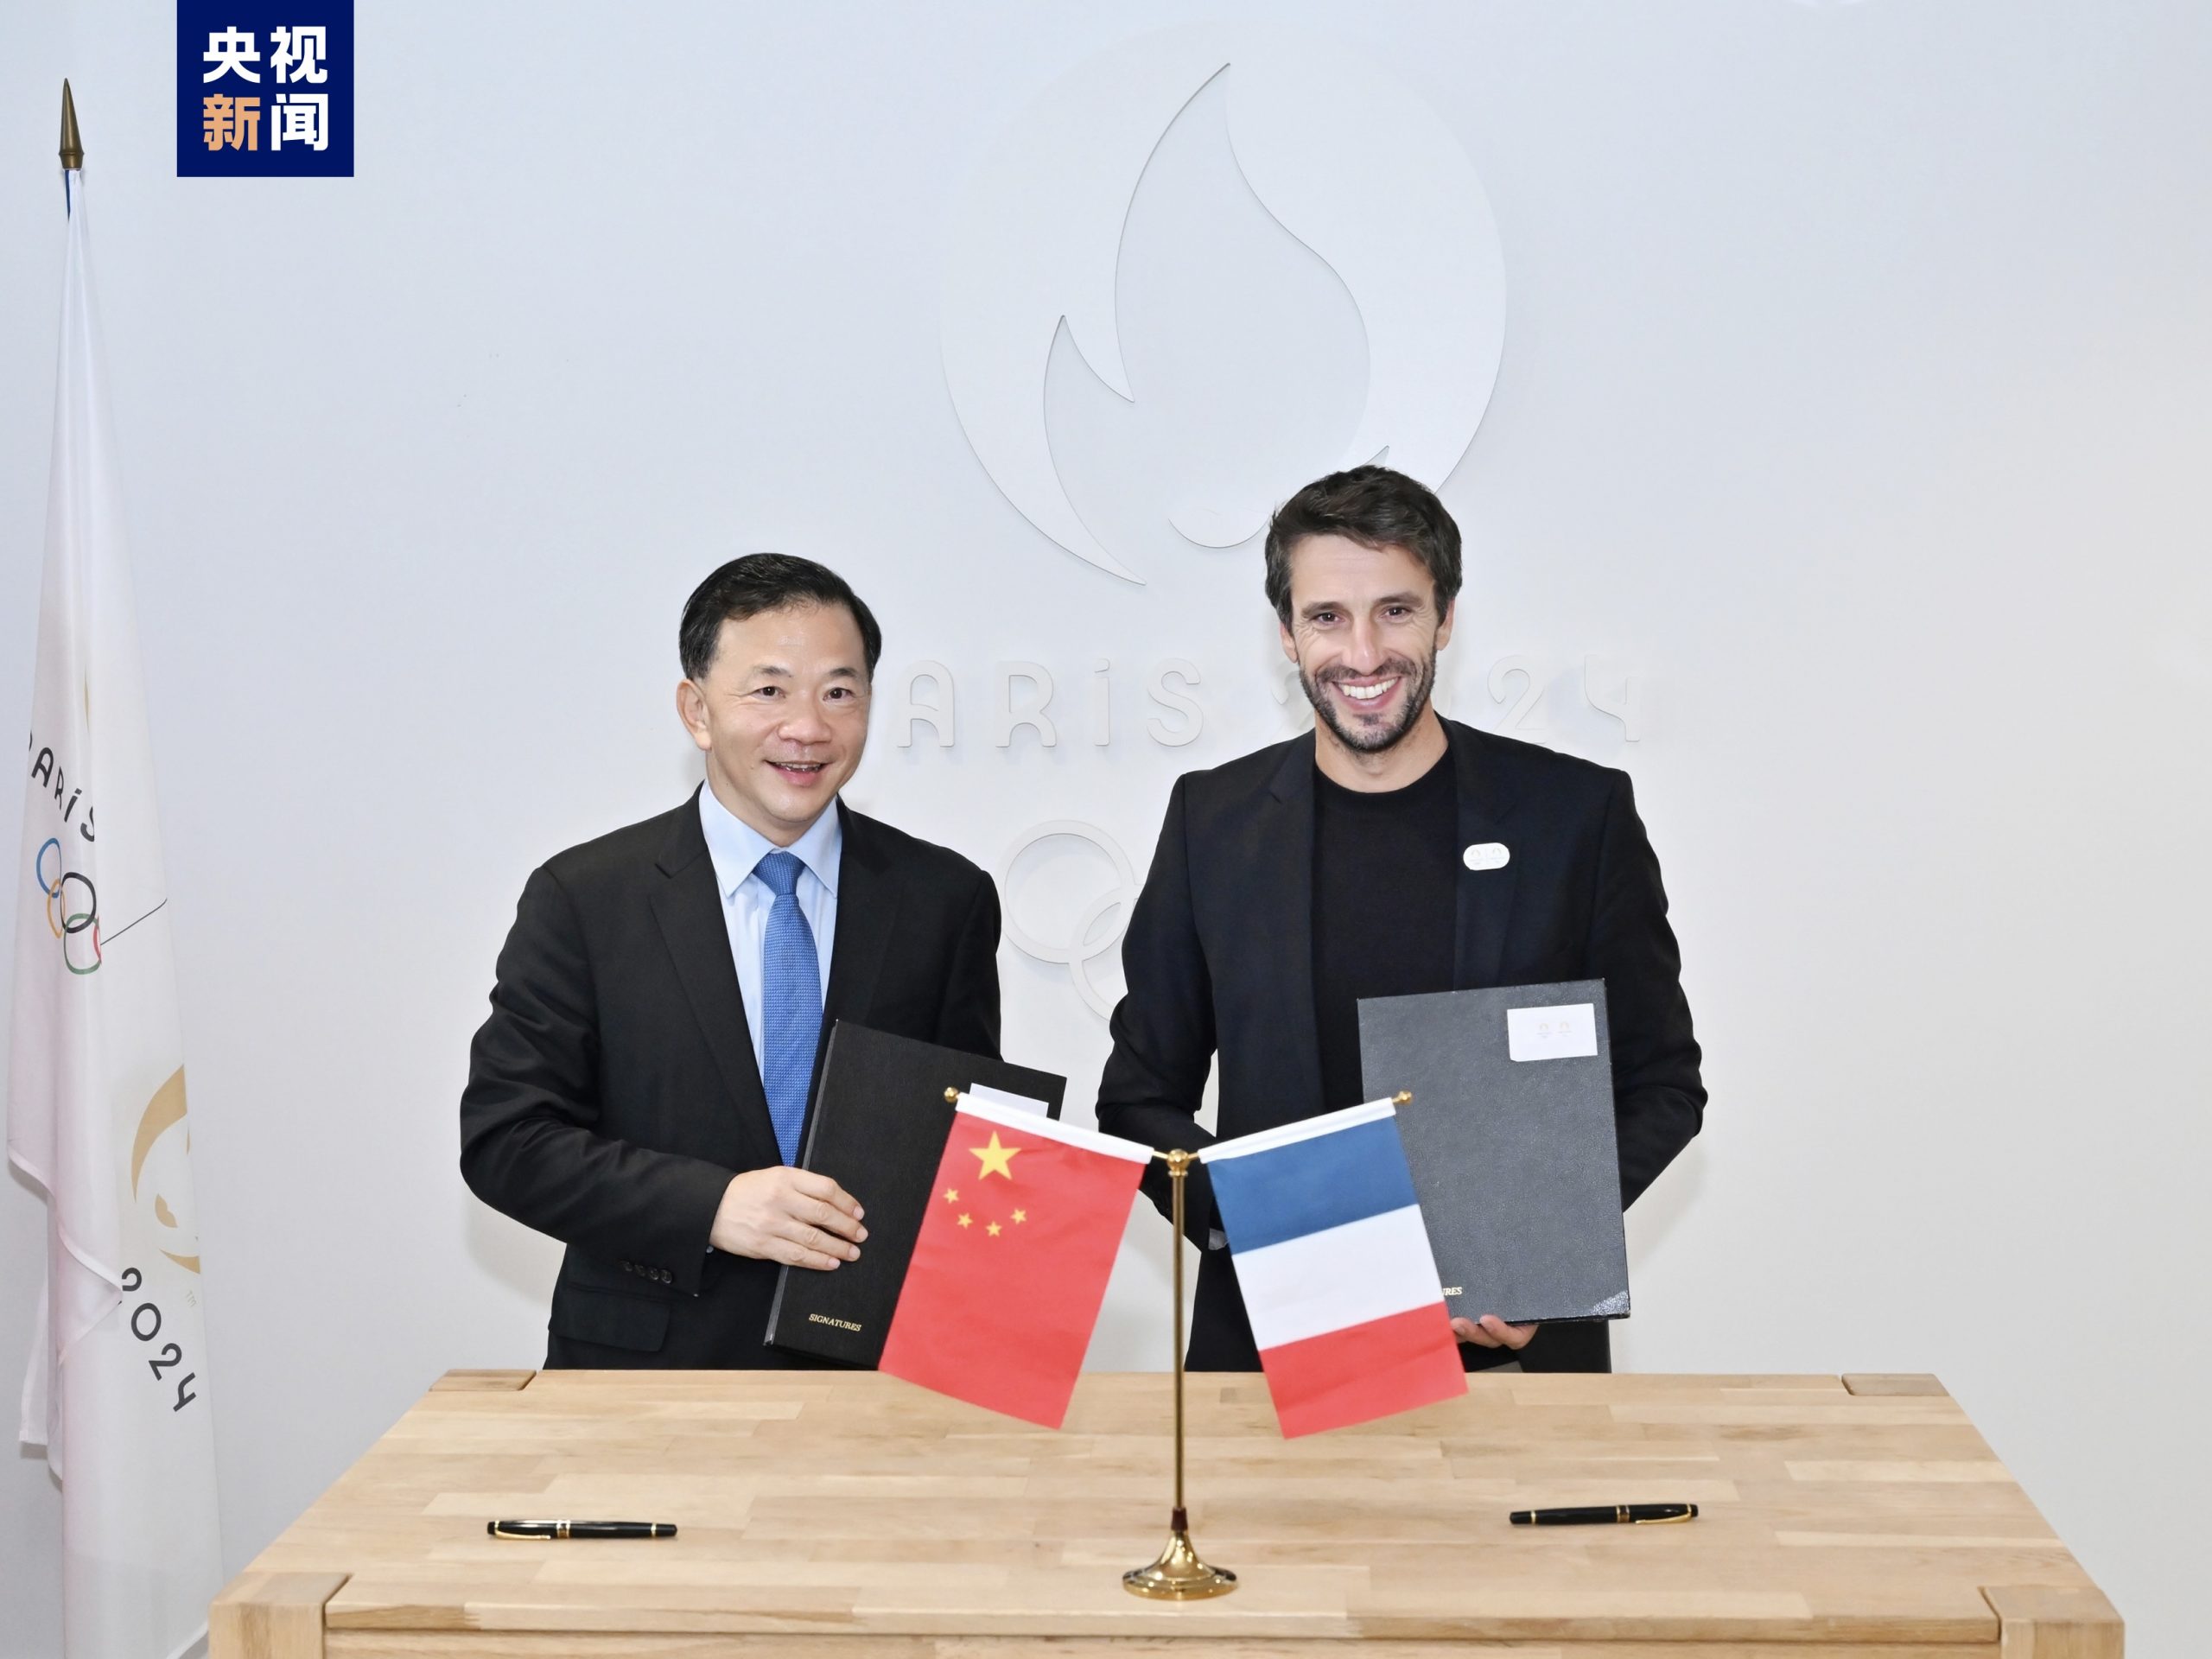 Η China Media Group υπογράφει μνημόνιο συνεργασίας με την Οργανωτική Επιτροπή Ολυμπιακών Αγώνων του Παρισιού